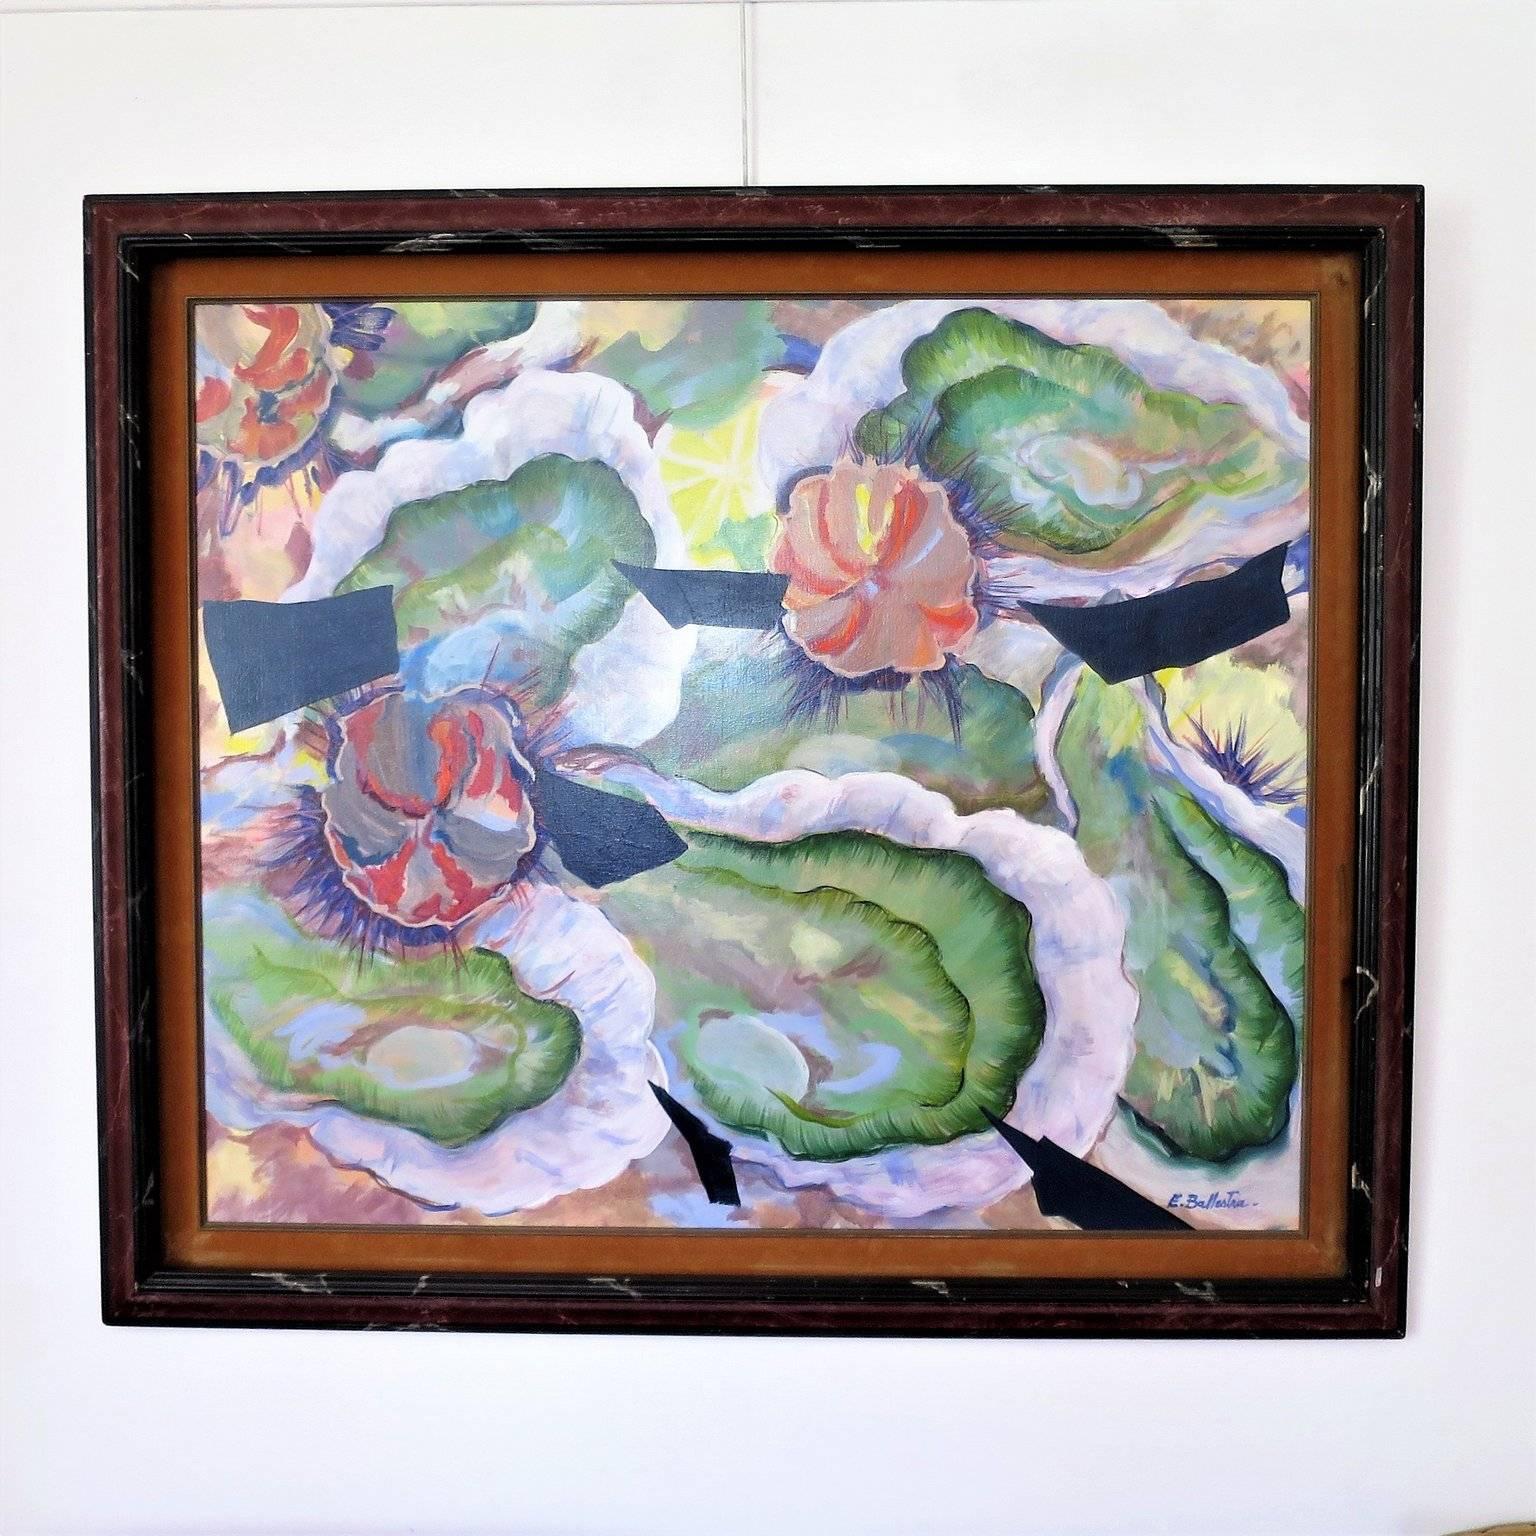 Peinture à l'huile contemporaine de E. BALLESTRA . L'école de la Provence française.
et les oursins,
